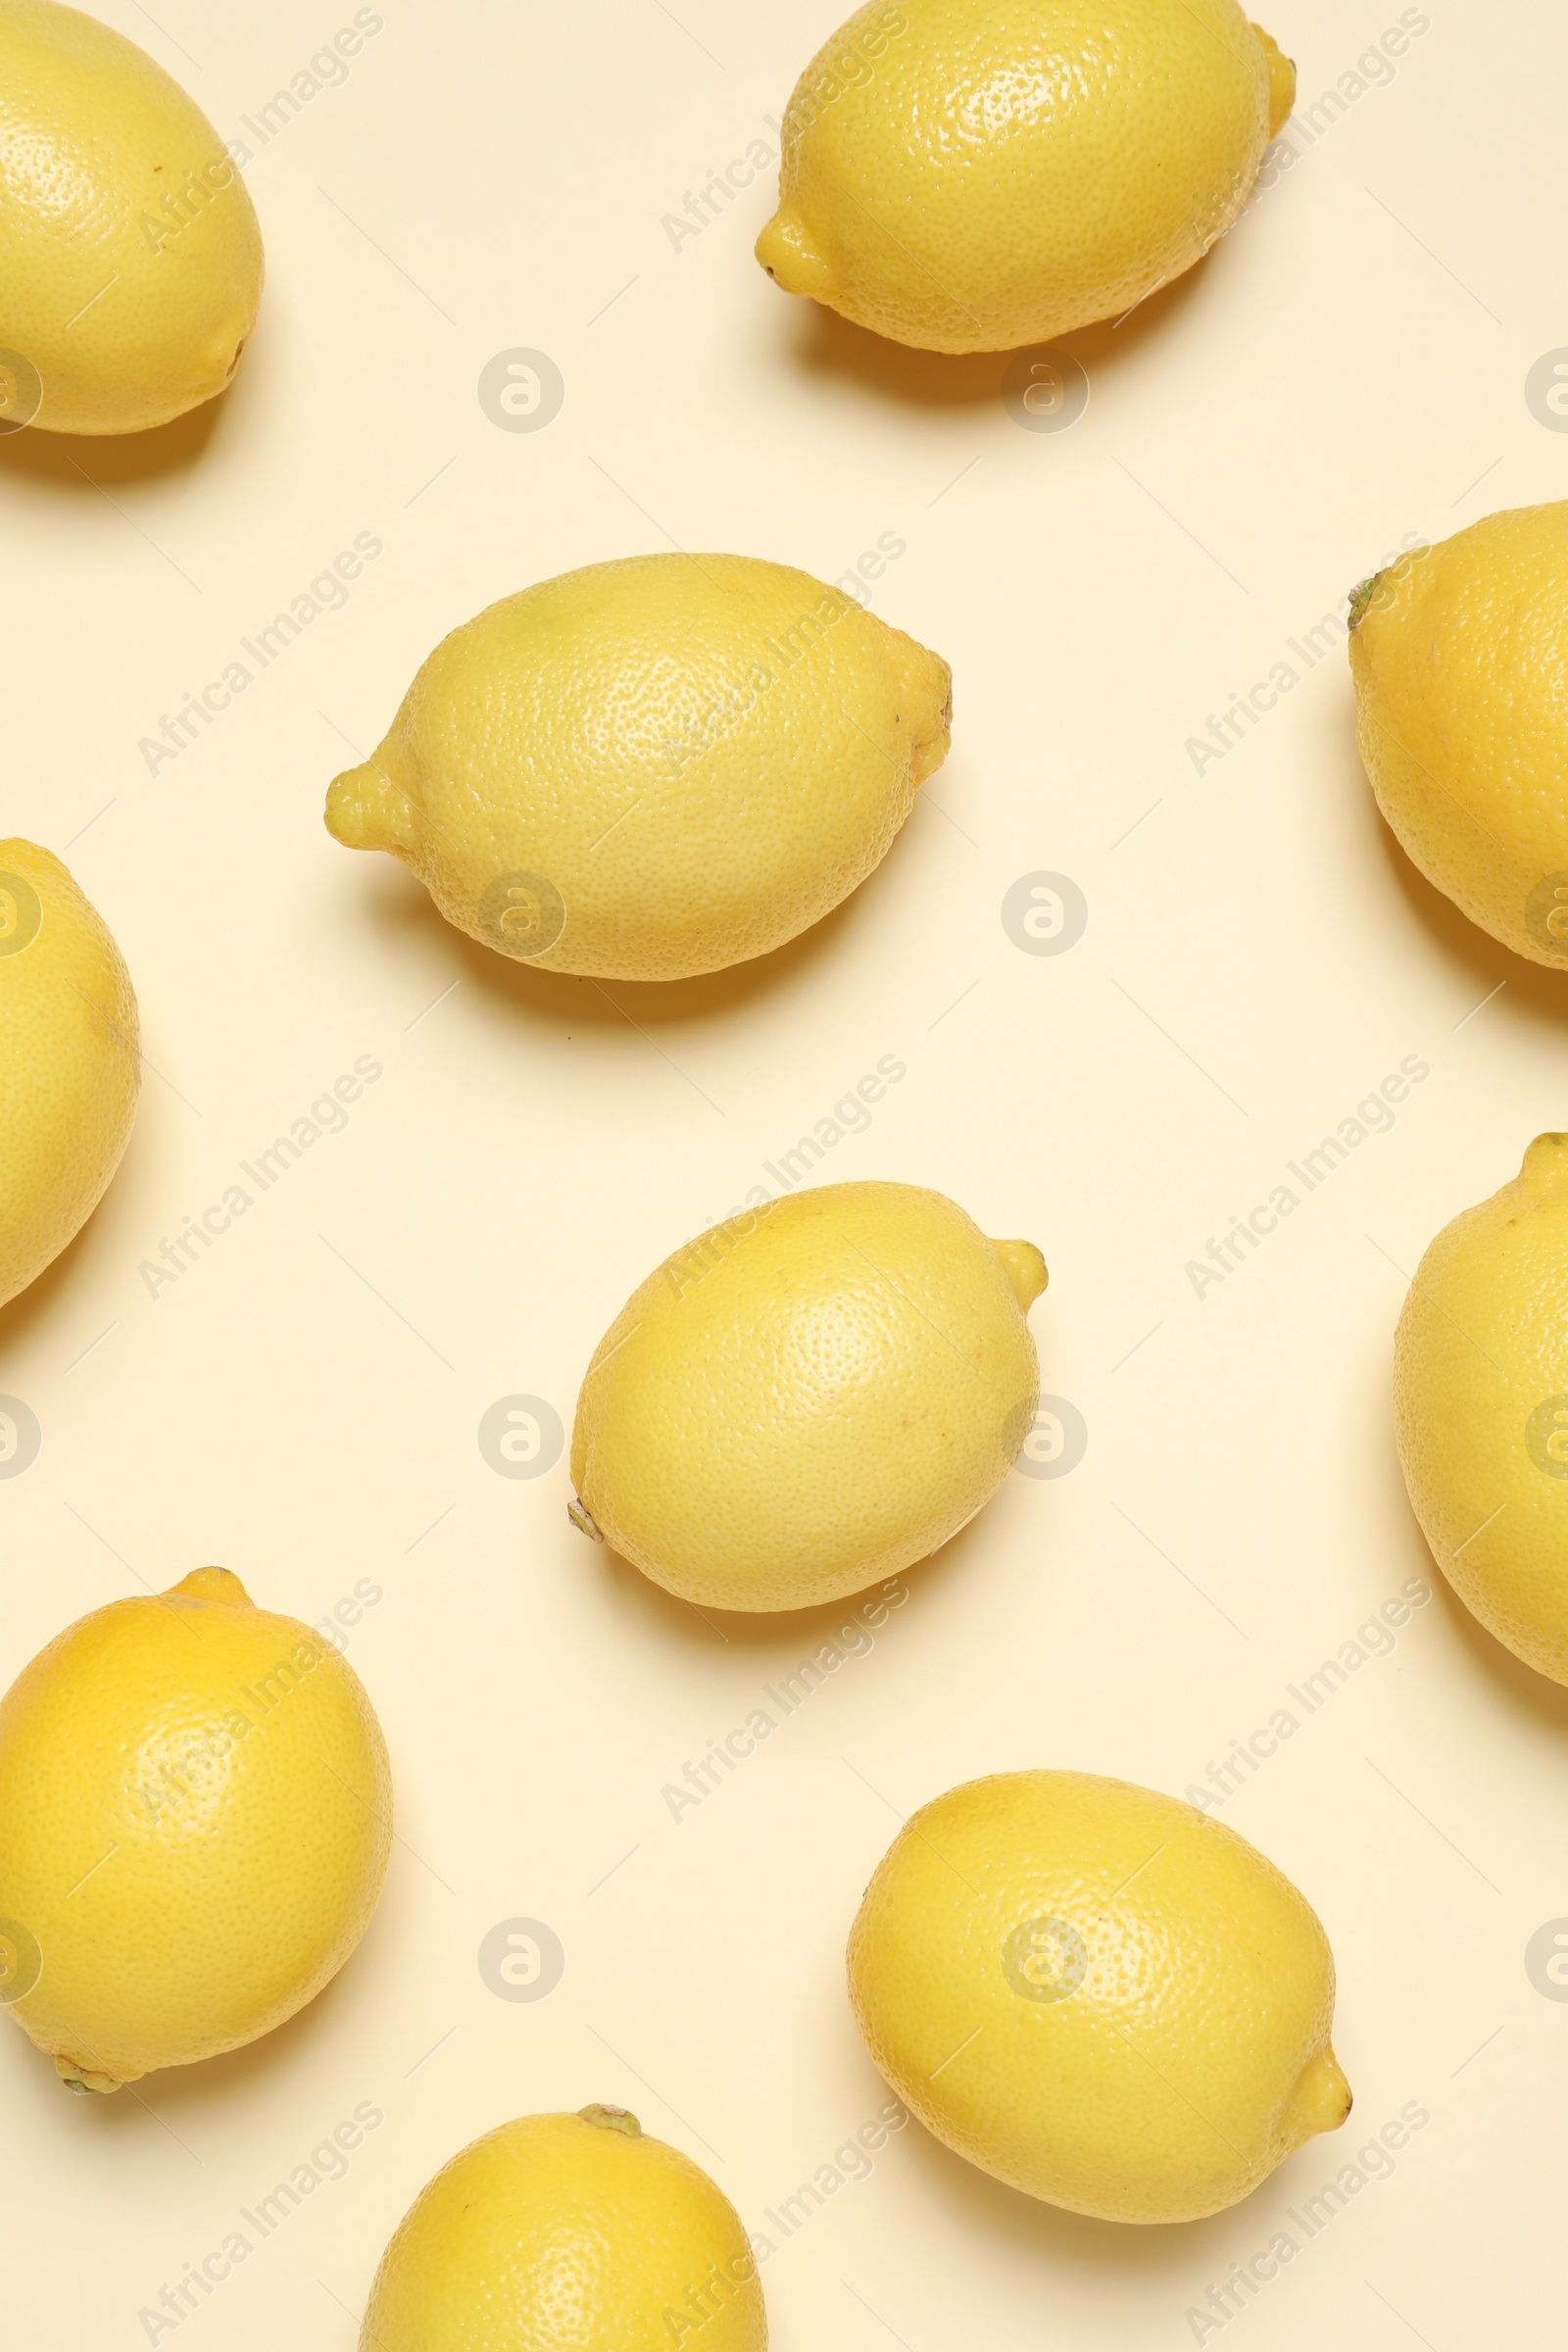 Photo of Fresh ripe lemons on beige background, flat lay